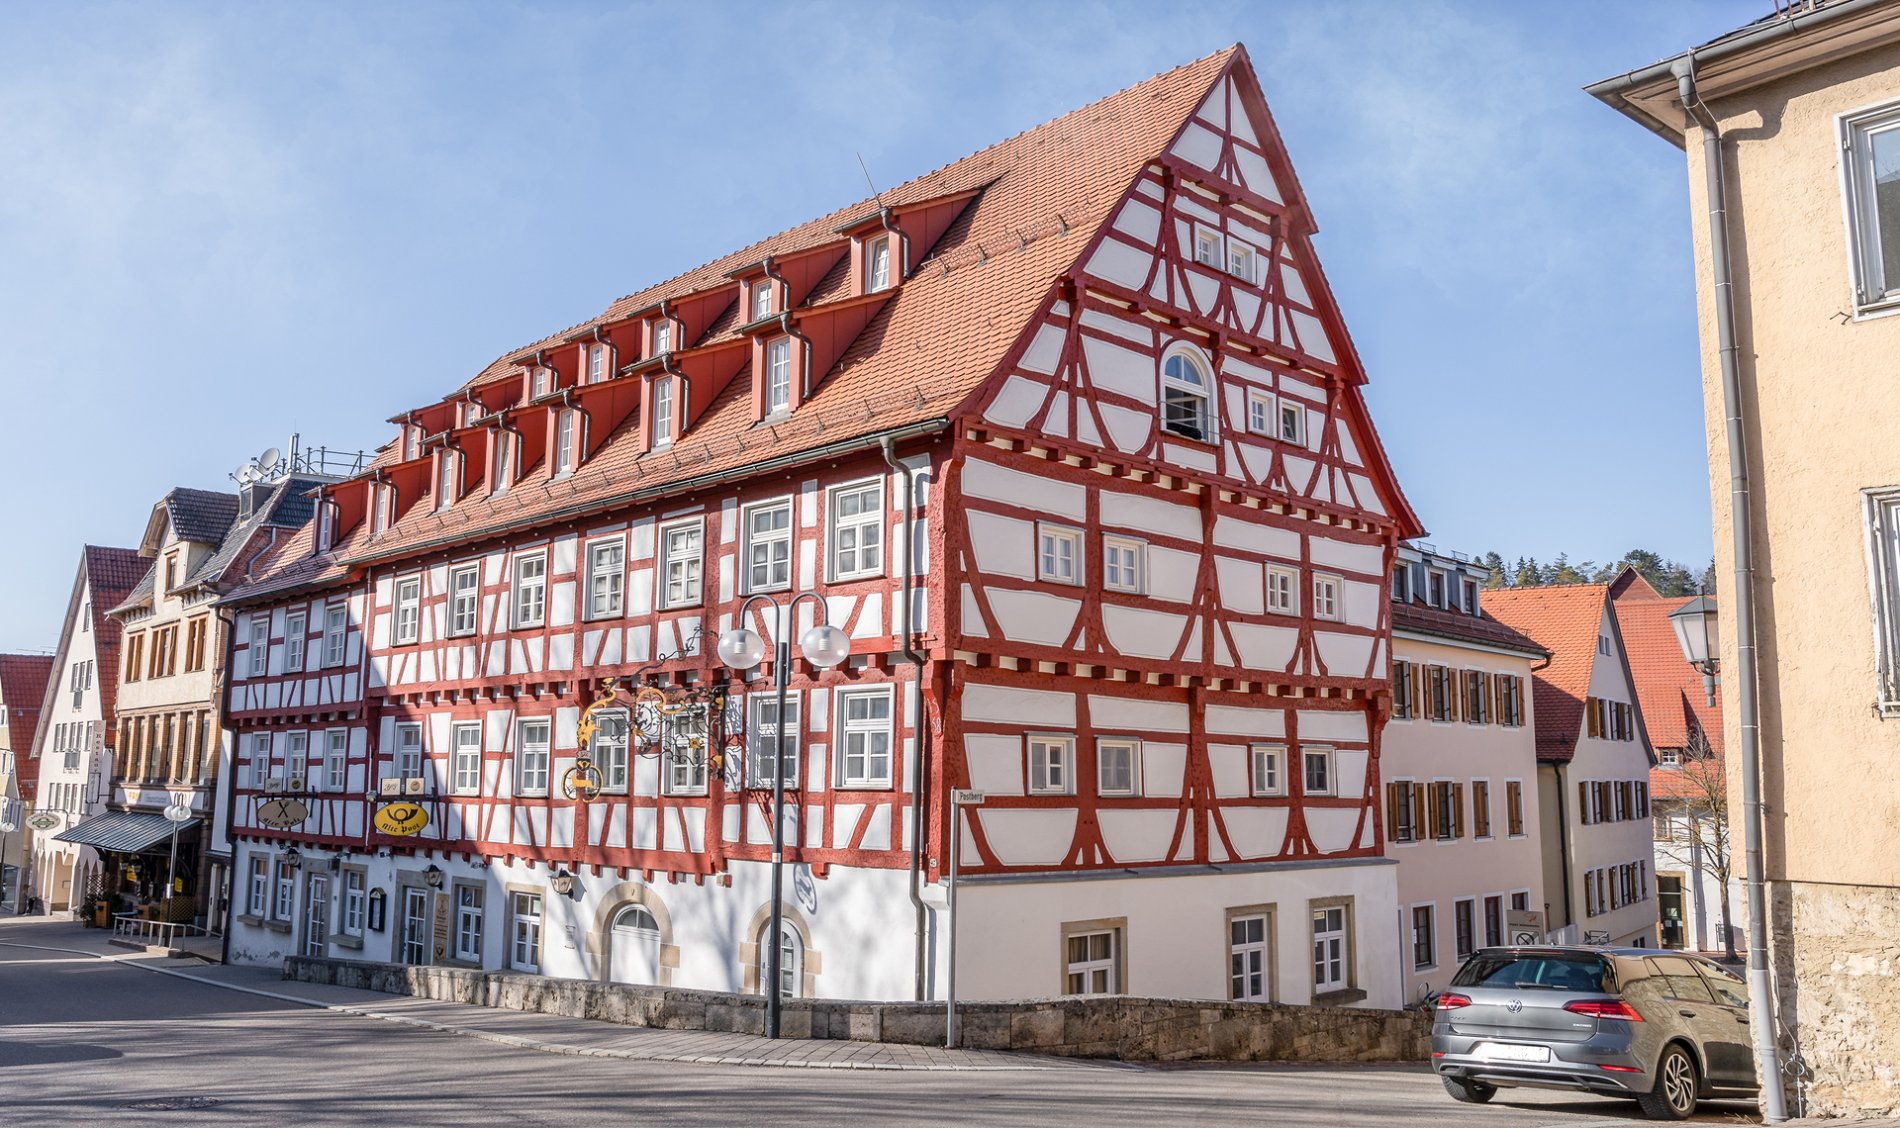 Gasthaus zum HIrsch und ehemalige Post in Münsingen im Biosphärengebiet Schwäbische Alb. Ein großes Fachwerkhaus in der Stadt direkt an einer Straße. An ihm hängt ein gelbes Postschild.